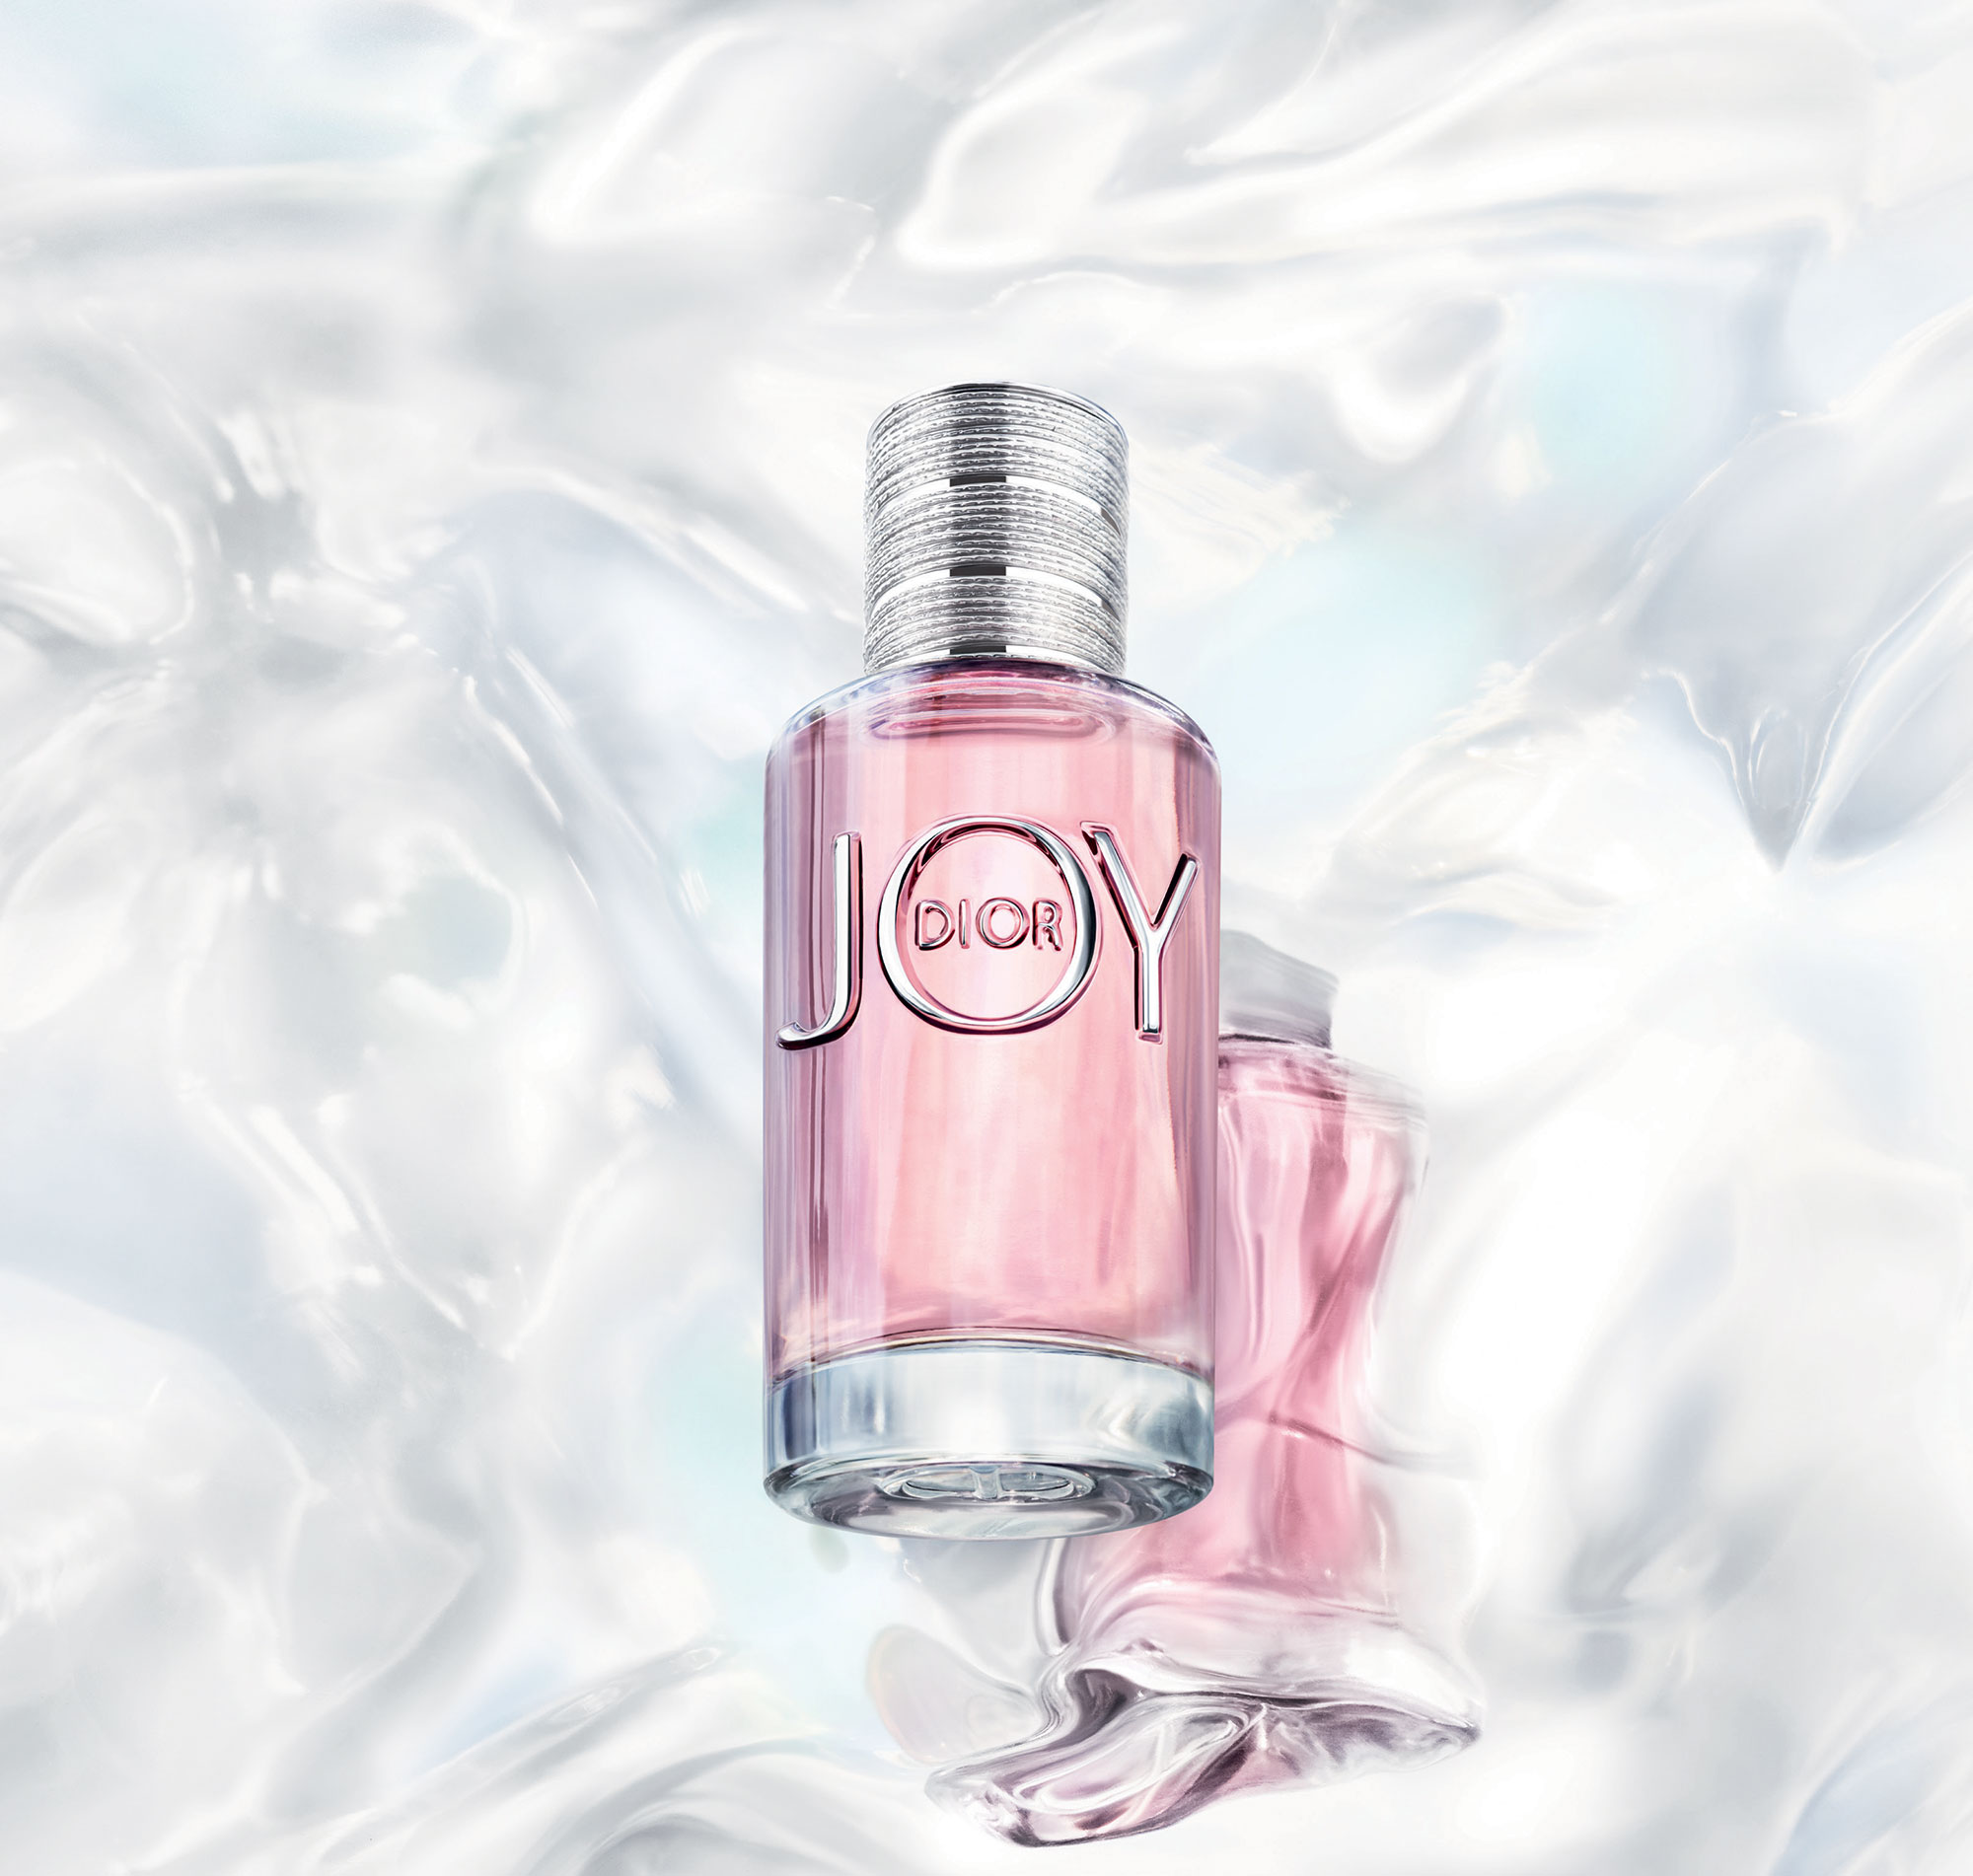 Joy by Dior Dior άρωμα - ένα νέο άρωμα για γυναίκες 2018